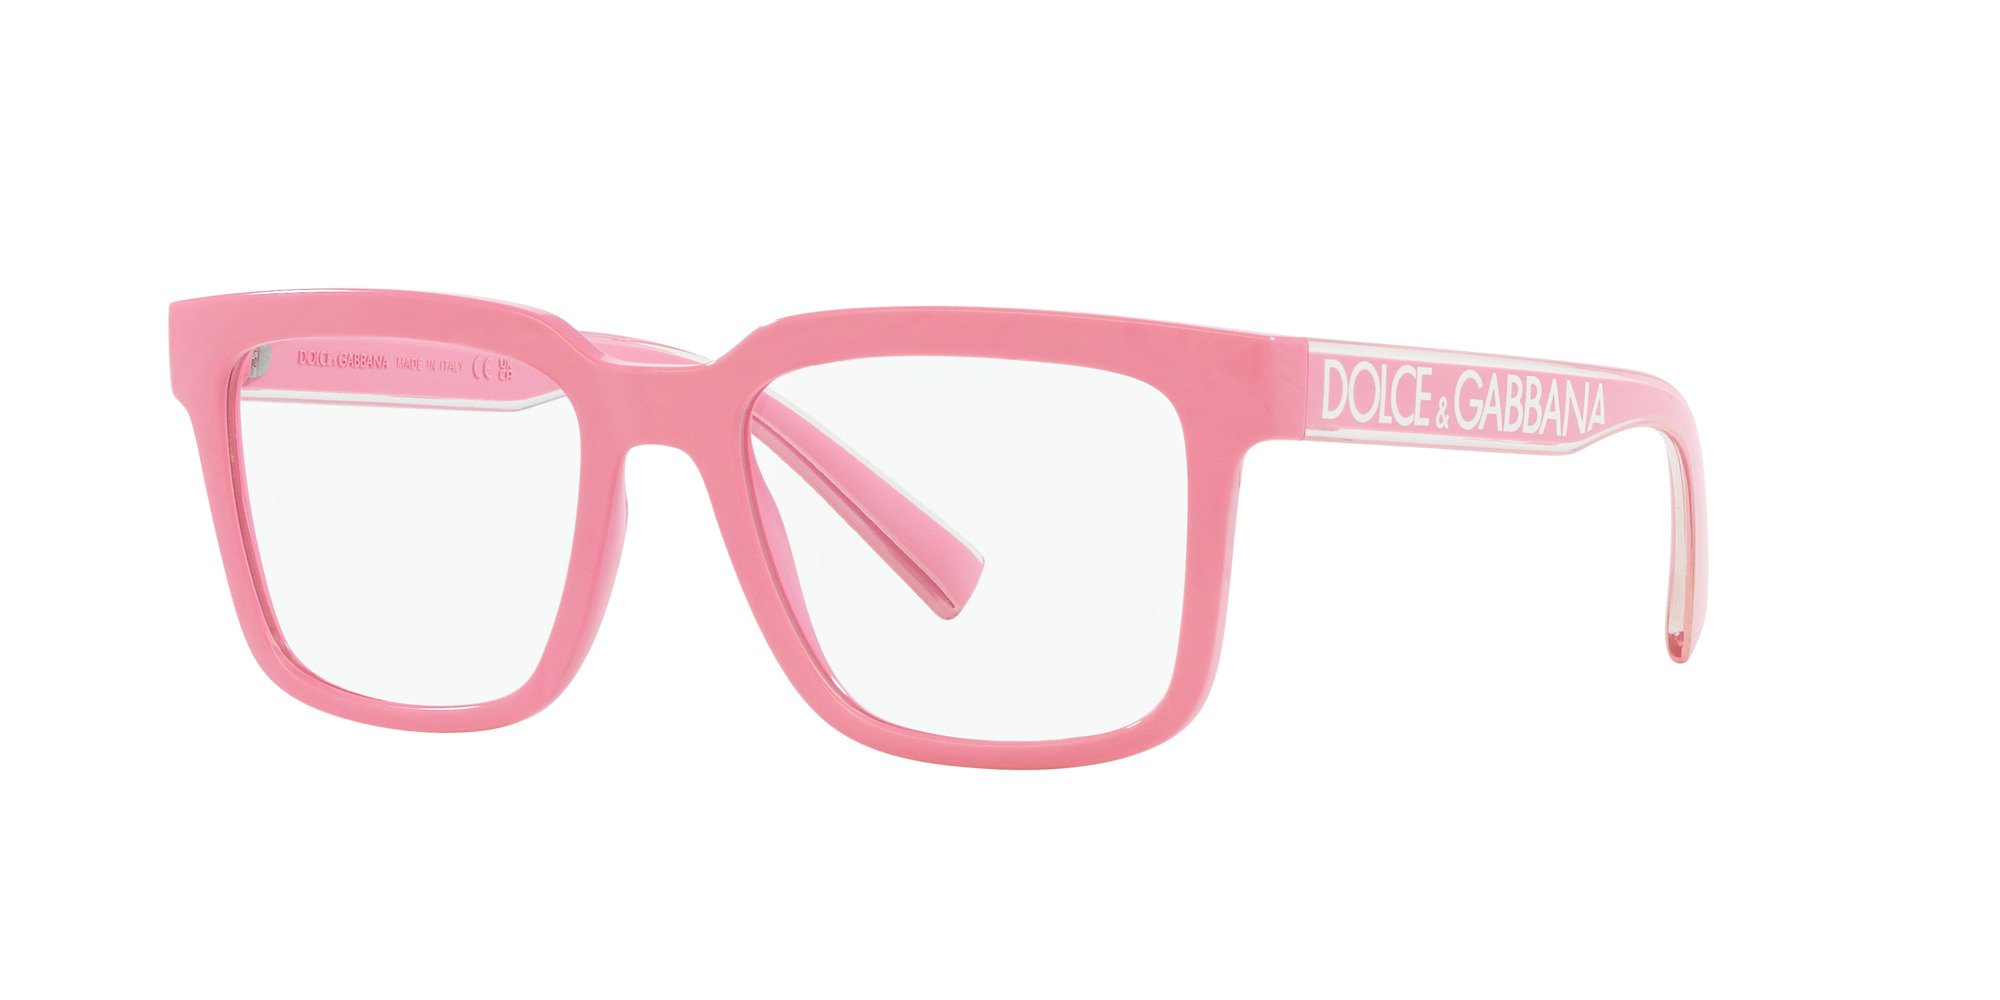 Das Bild zeigt die Korrektionsbrille DG5101 3262 von der Marke D&G in rosa.